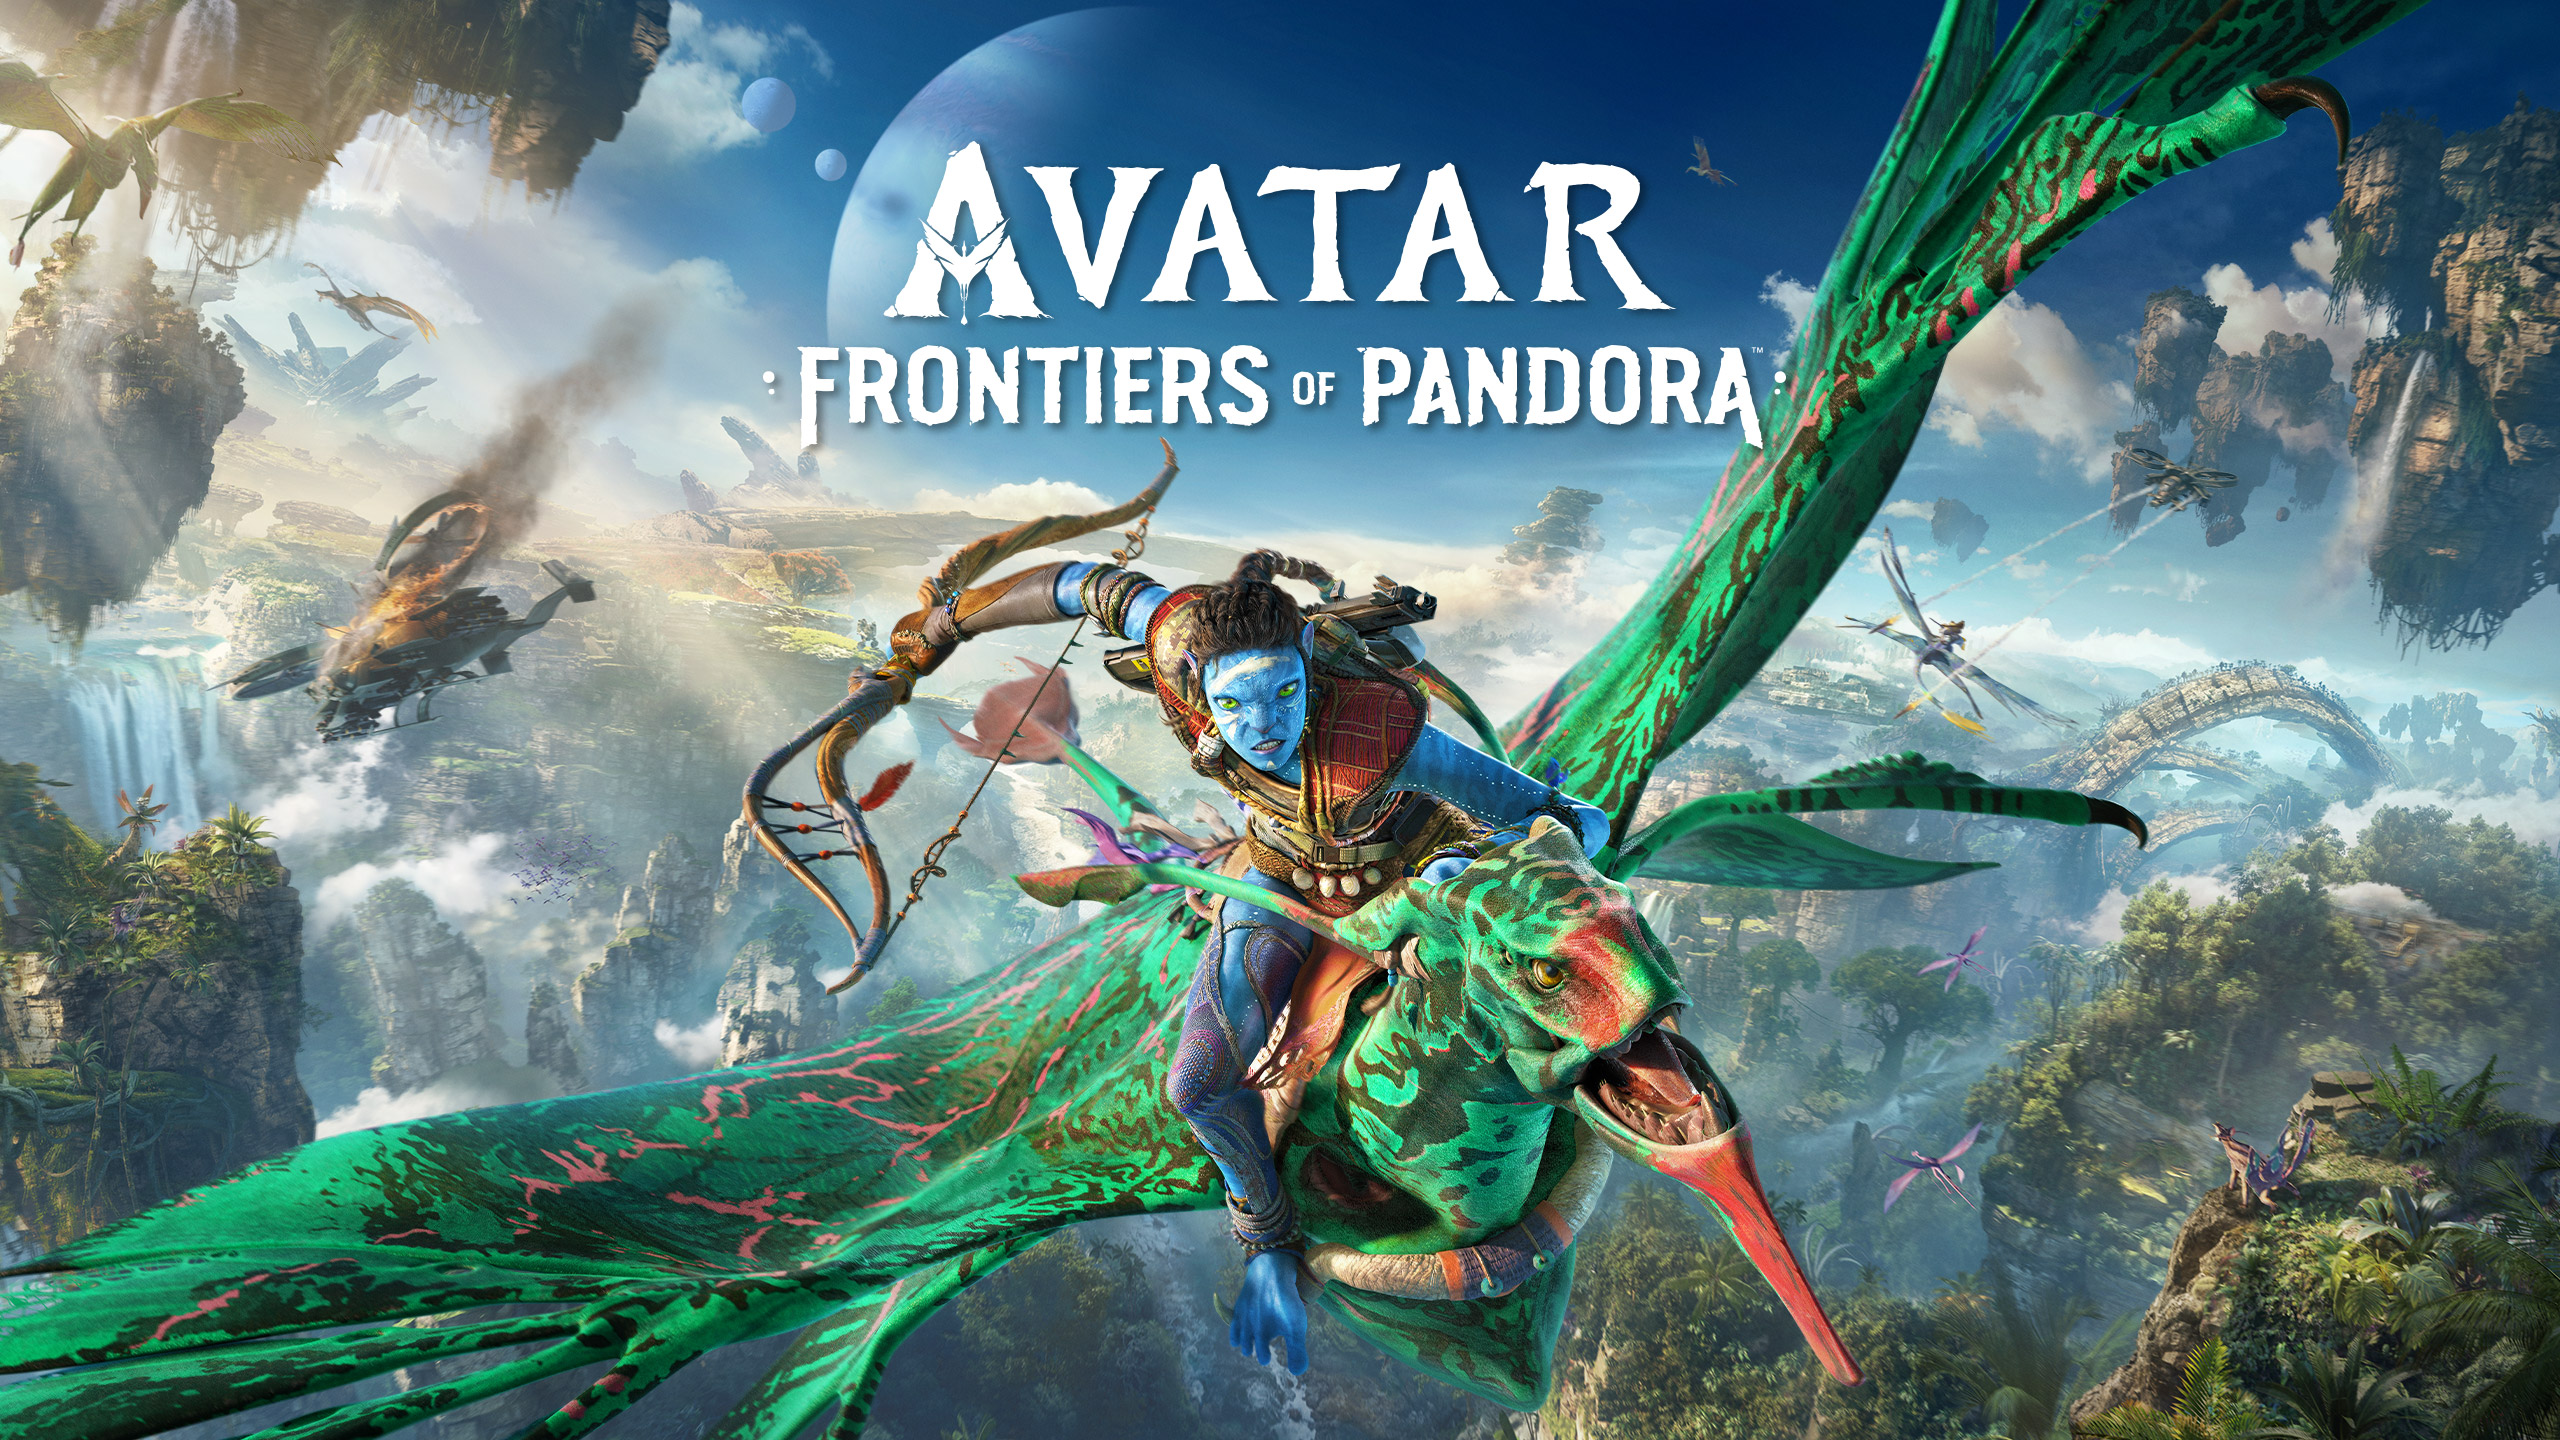 نقد و بررسی بازی Avatar: Frontiers of Pandora + نمرات و نظرات